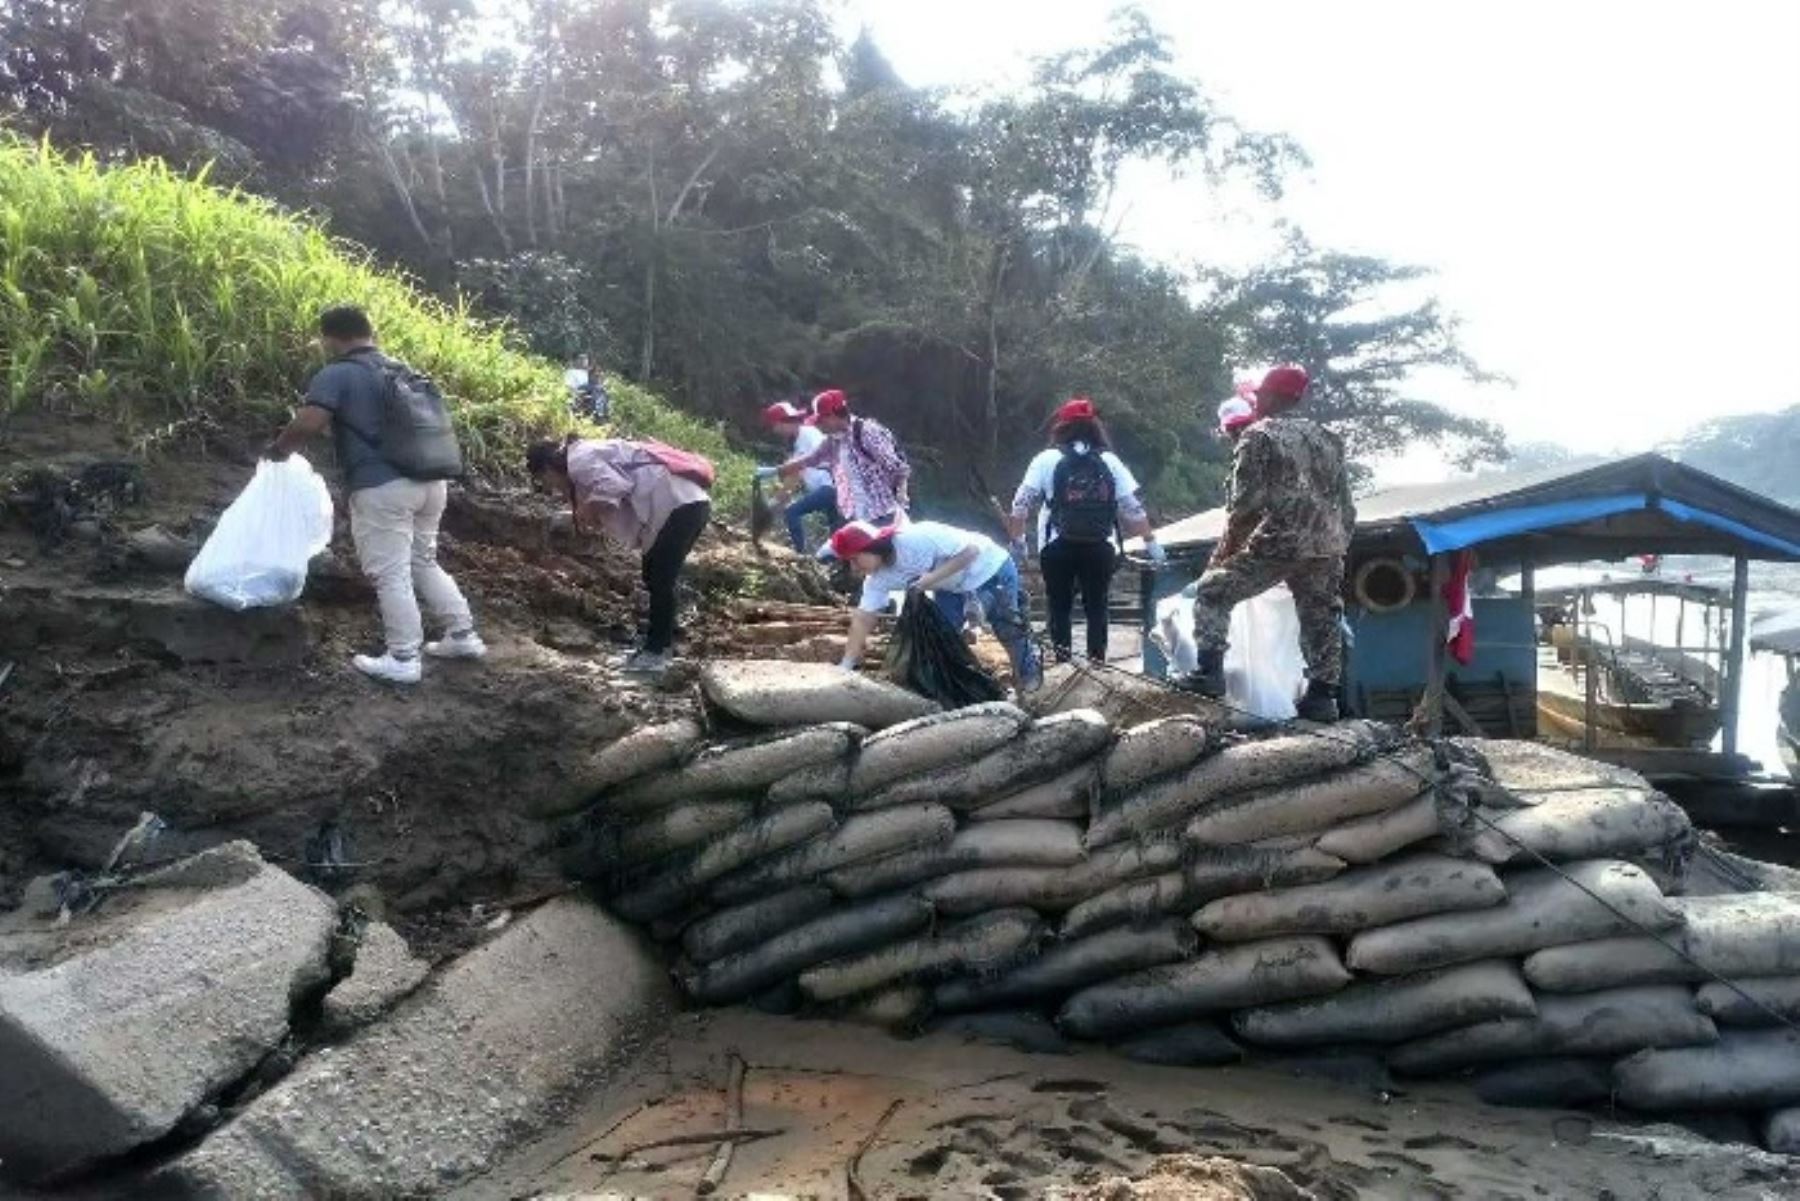 El Ministerio de Comercio Exterior y Turismo (Mincetur) lideró una jornada de limpieza en las orillas del río Madre de Dios, ubicada en la zona de amortiguamiento de la Reserva Nacional Tambopata, y 210 voluntarios recolectaron cuatro toneladas de desperdicios.